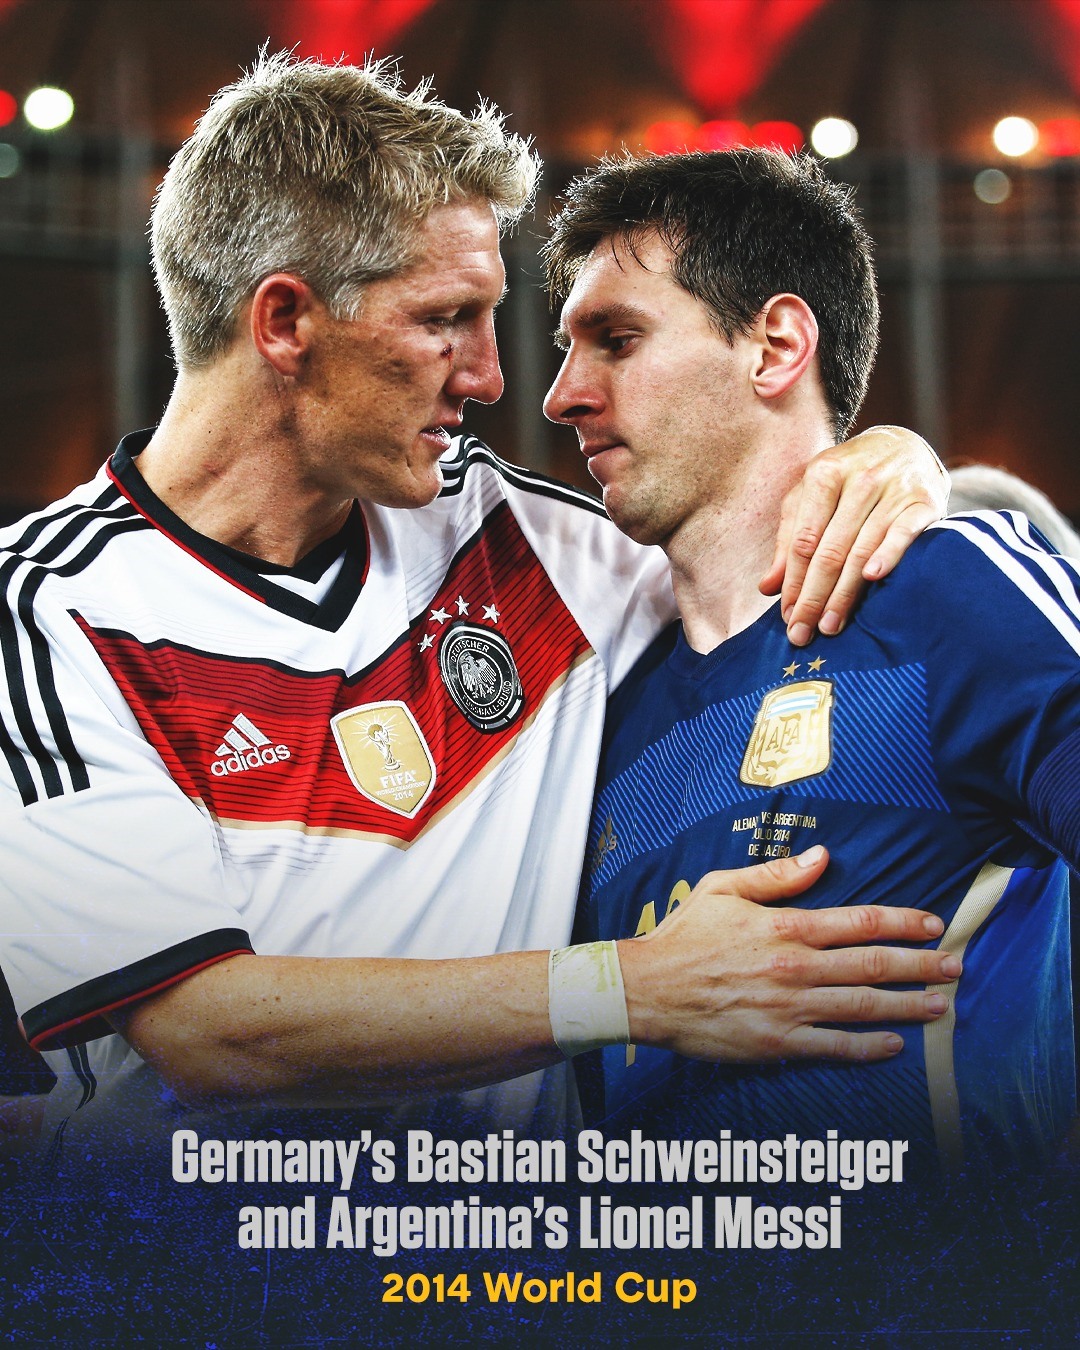 Tiền vệ Bastian Schweinsteiger của tuyển Đức an ủi Lionel Messi của tuyển Argentina, sau trận chung kết World Cup 2014. Trận này, tuyển Đức thắng Argentina 1-0, nhờ pha lập công duy nhất của Mario Gotze ở cuối hiệp phụ thứ 2.